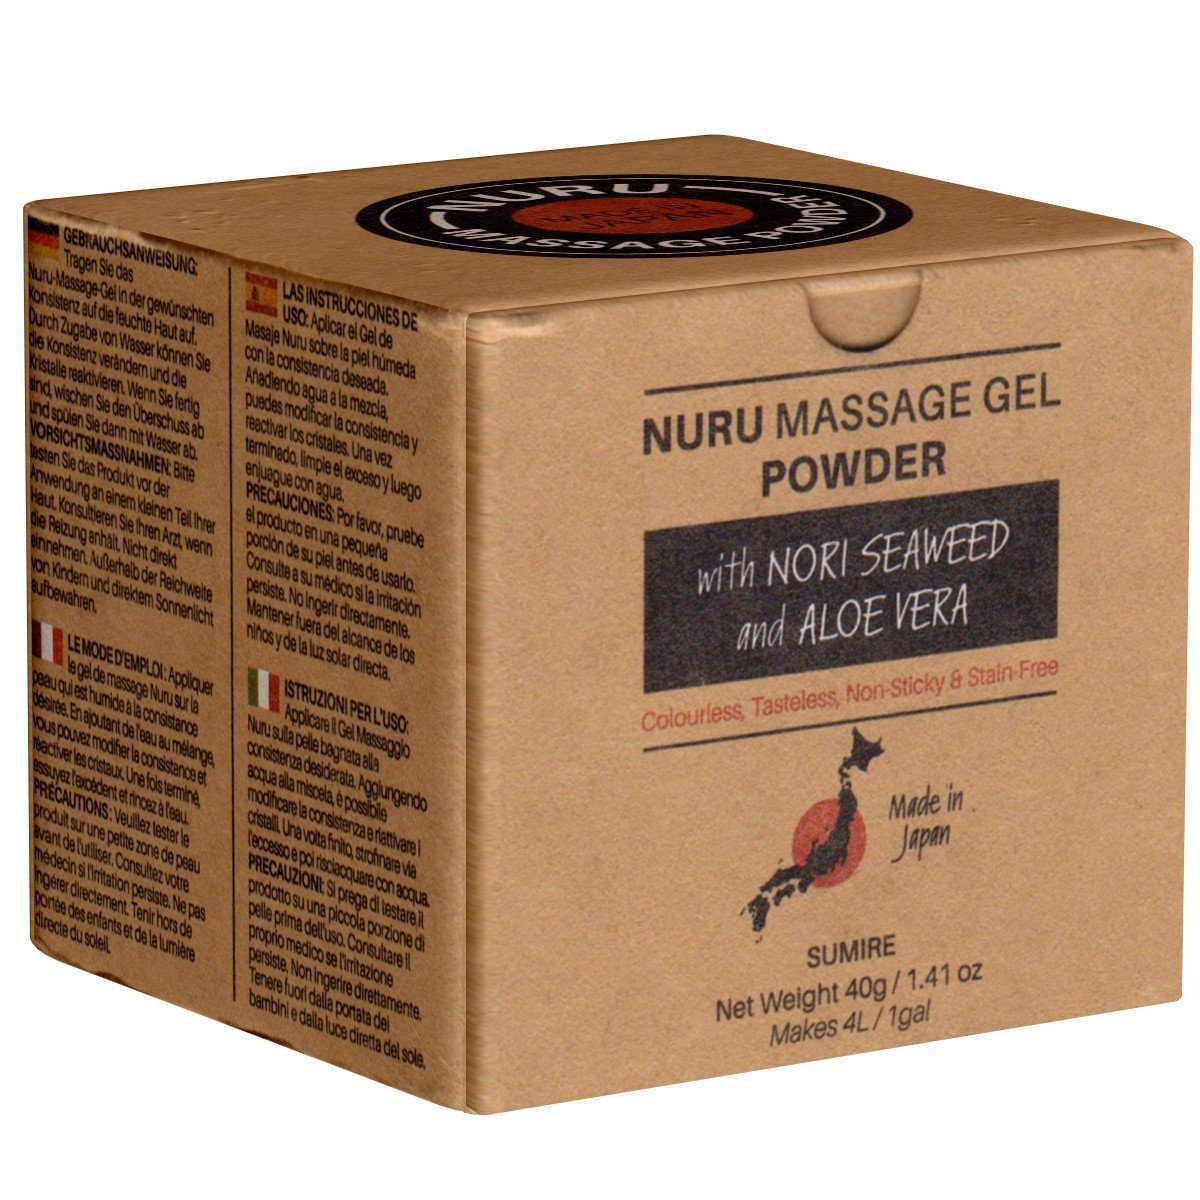 Made in Japan Gleit- und Massagegel Nuru Massage Gel Powder (Nori Seaweed & Aloe Vera), SUMIRE Edition, Dose mit 40g, 1-tlg., japanisches Massagegel-Pulver aus natürlichen Inhaltsstoffen